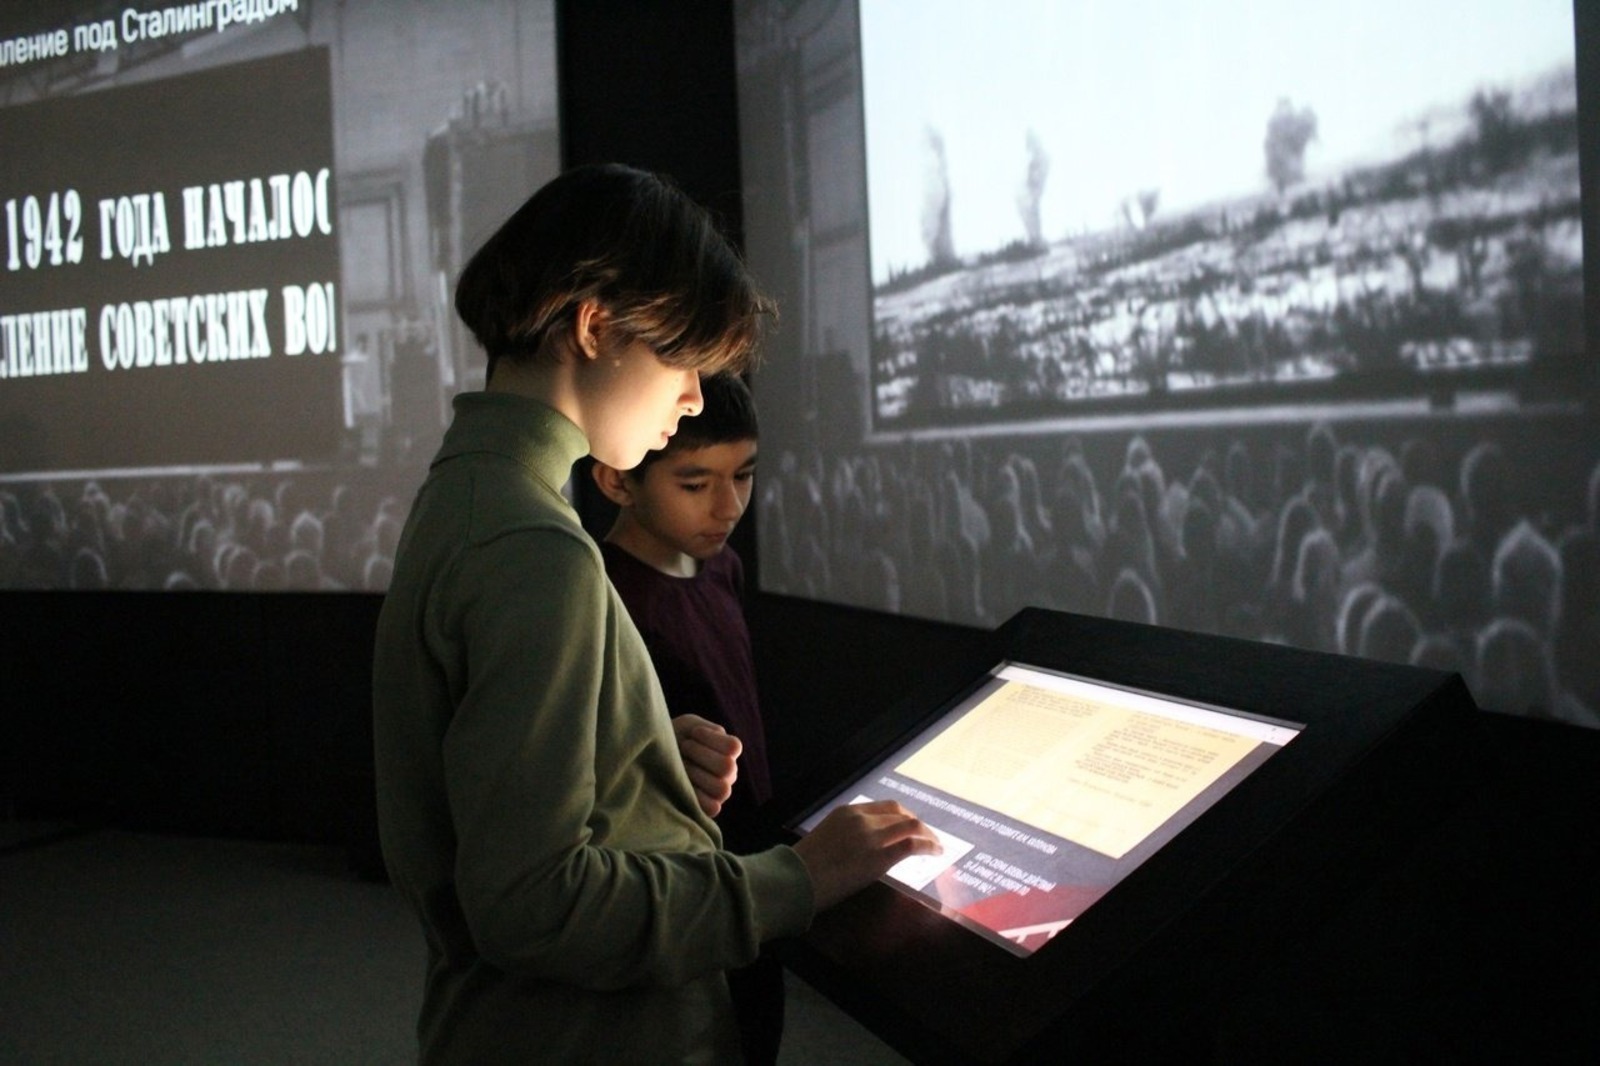 Өфөлә Сталинград һуғышының 80 йыллығына арналған мультимедиалы күргәҙмә асыла